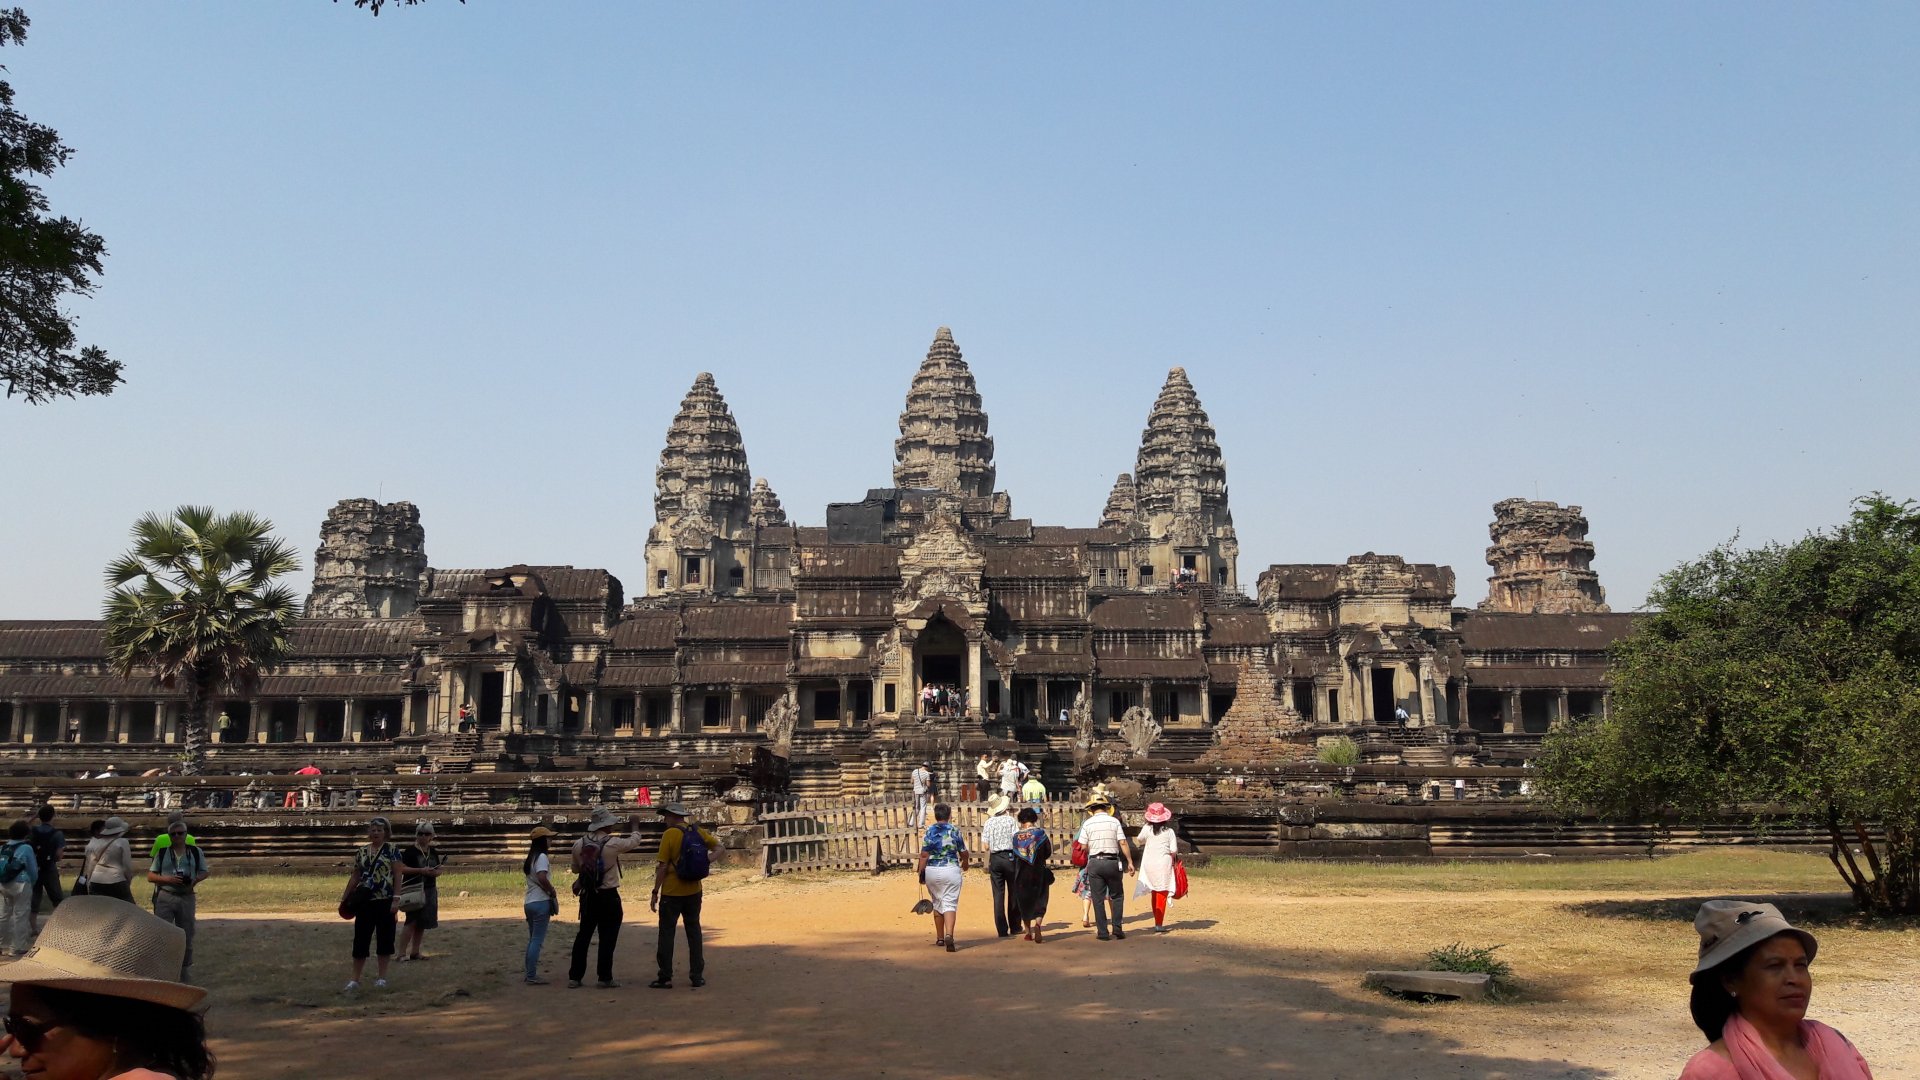  Angkor Wat beauty in Cambodia